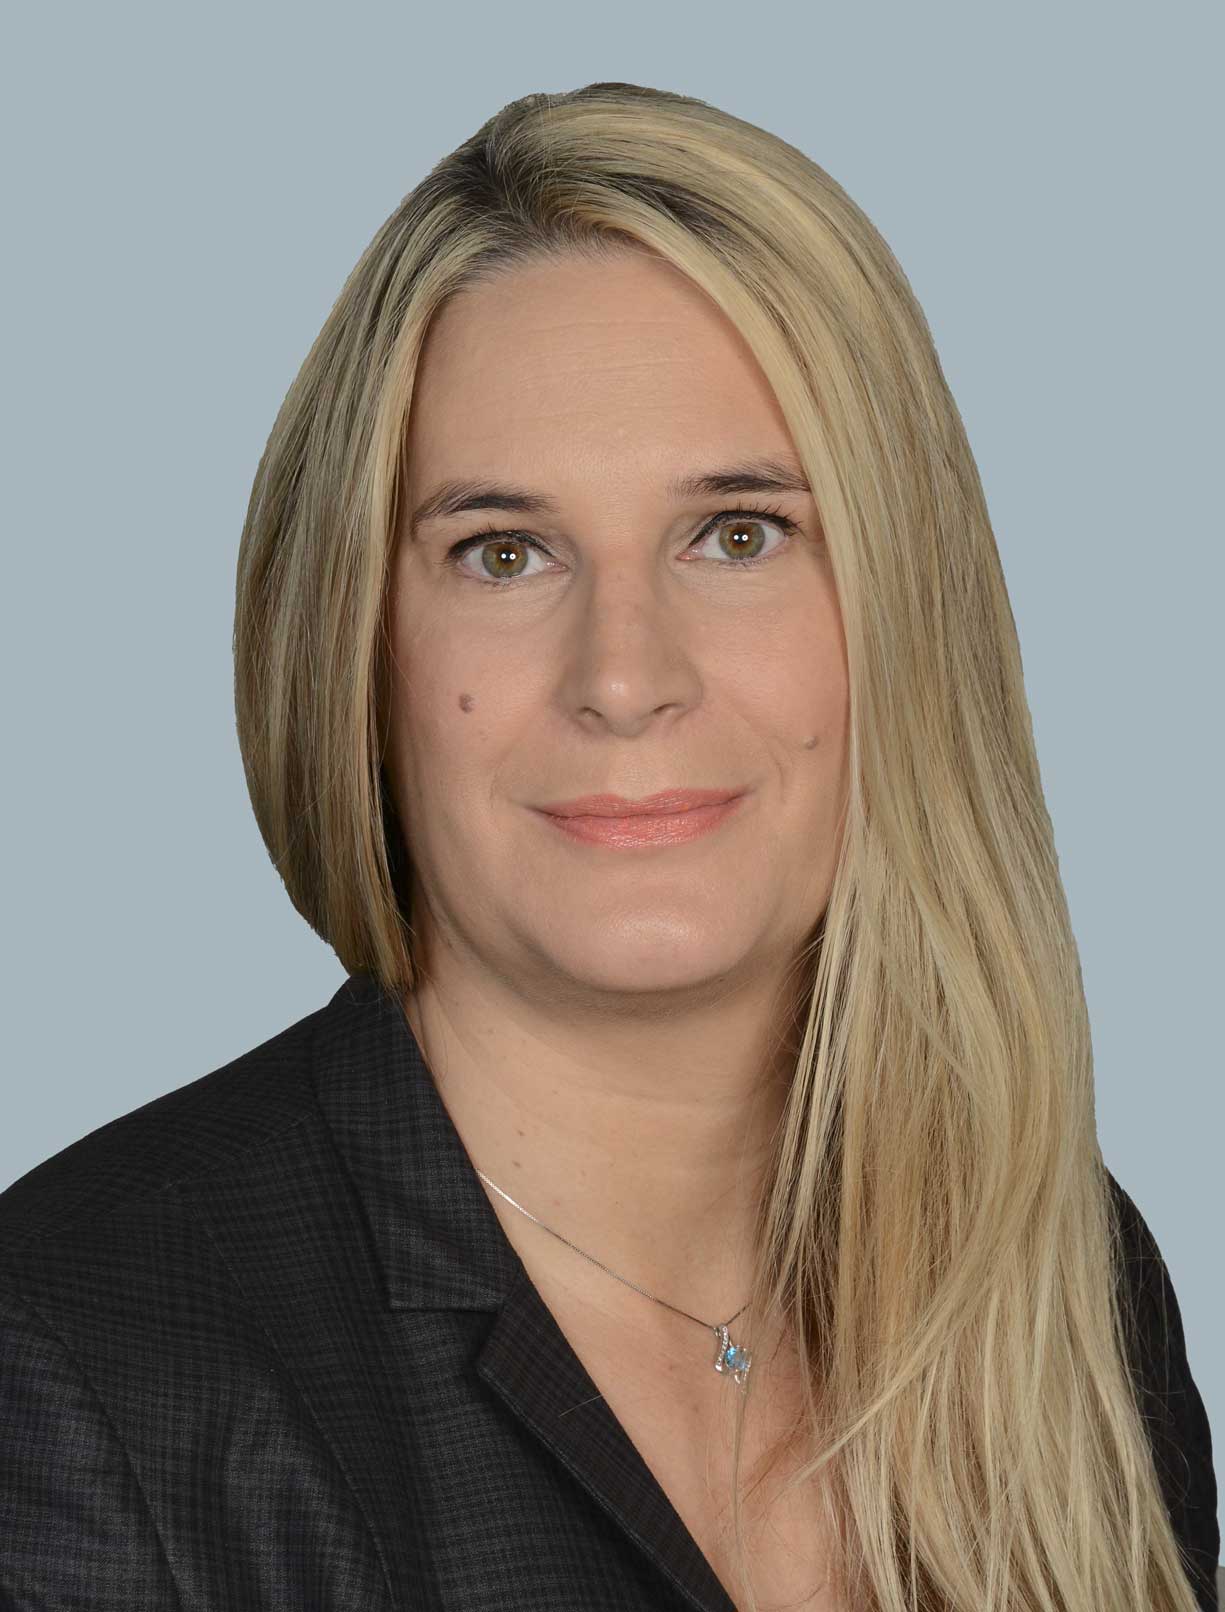 Melanie Stauffer : Director & Head Business Development MENA Region